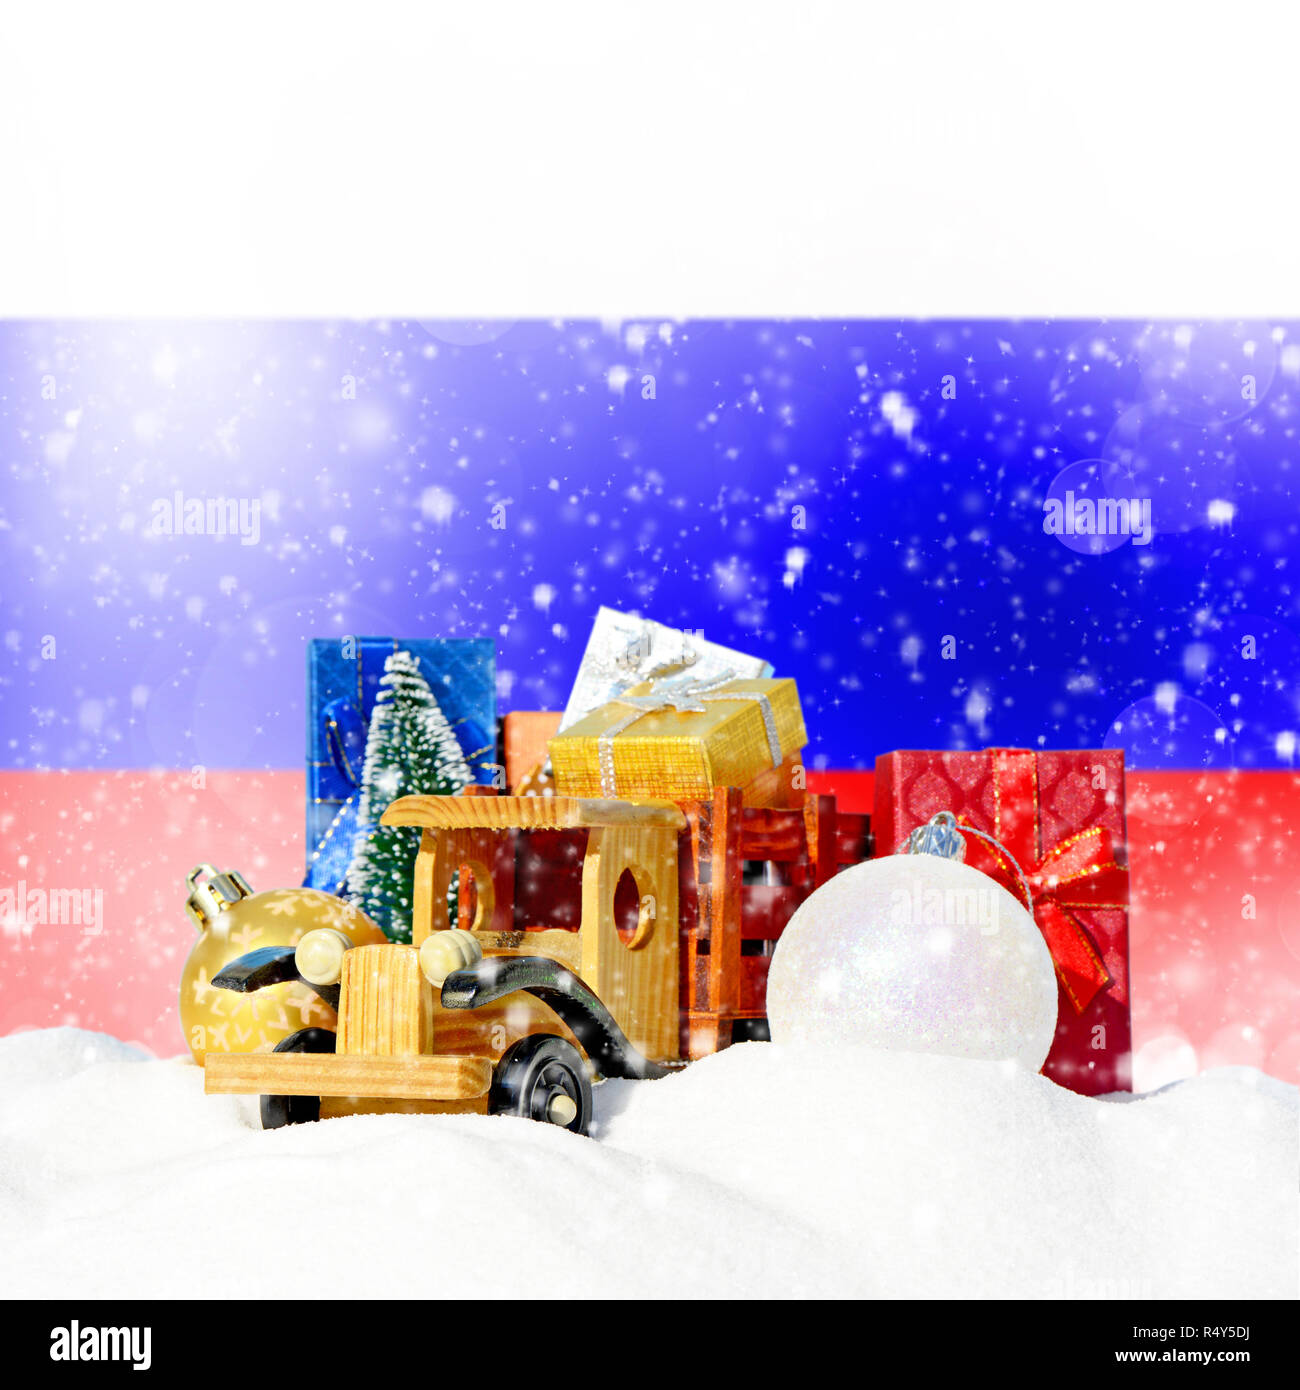 Weihnachten Hintergrund. Spielzeug-LKW mit Geschenken, Neues Jahr Tanne, Kugeln im Schneetreiben und Russische Fahne Stockfoto